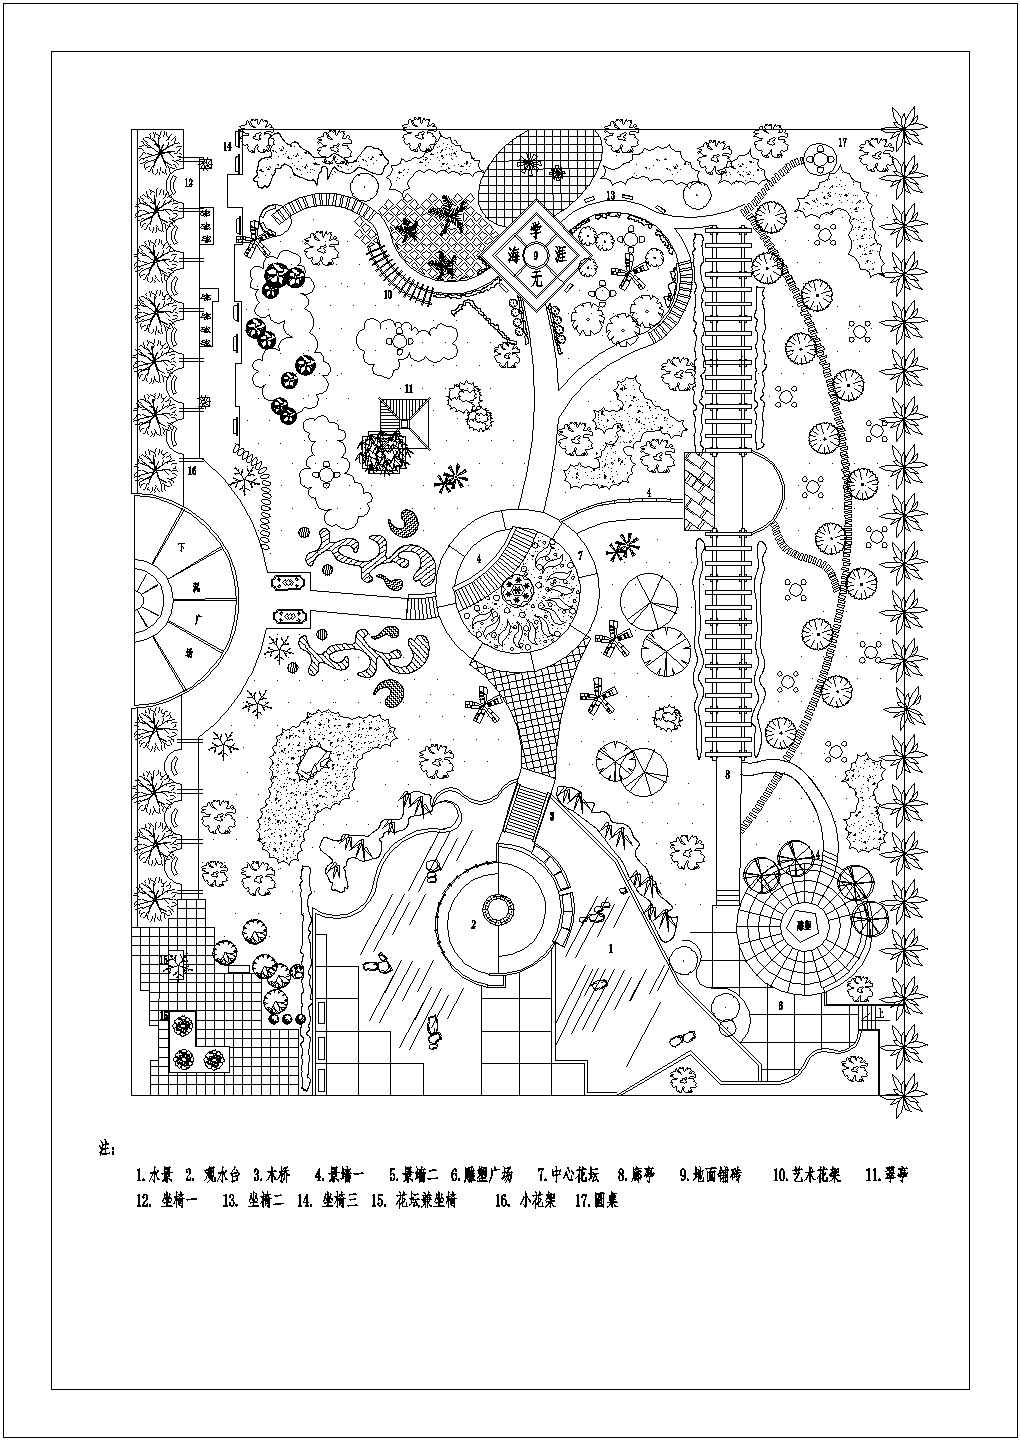 校园景园绿化规划平面图